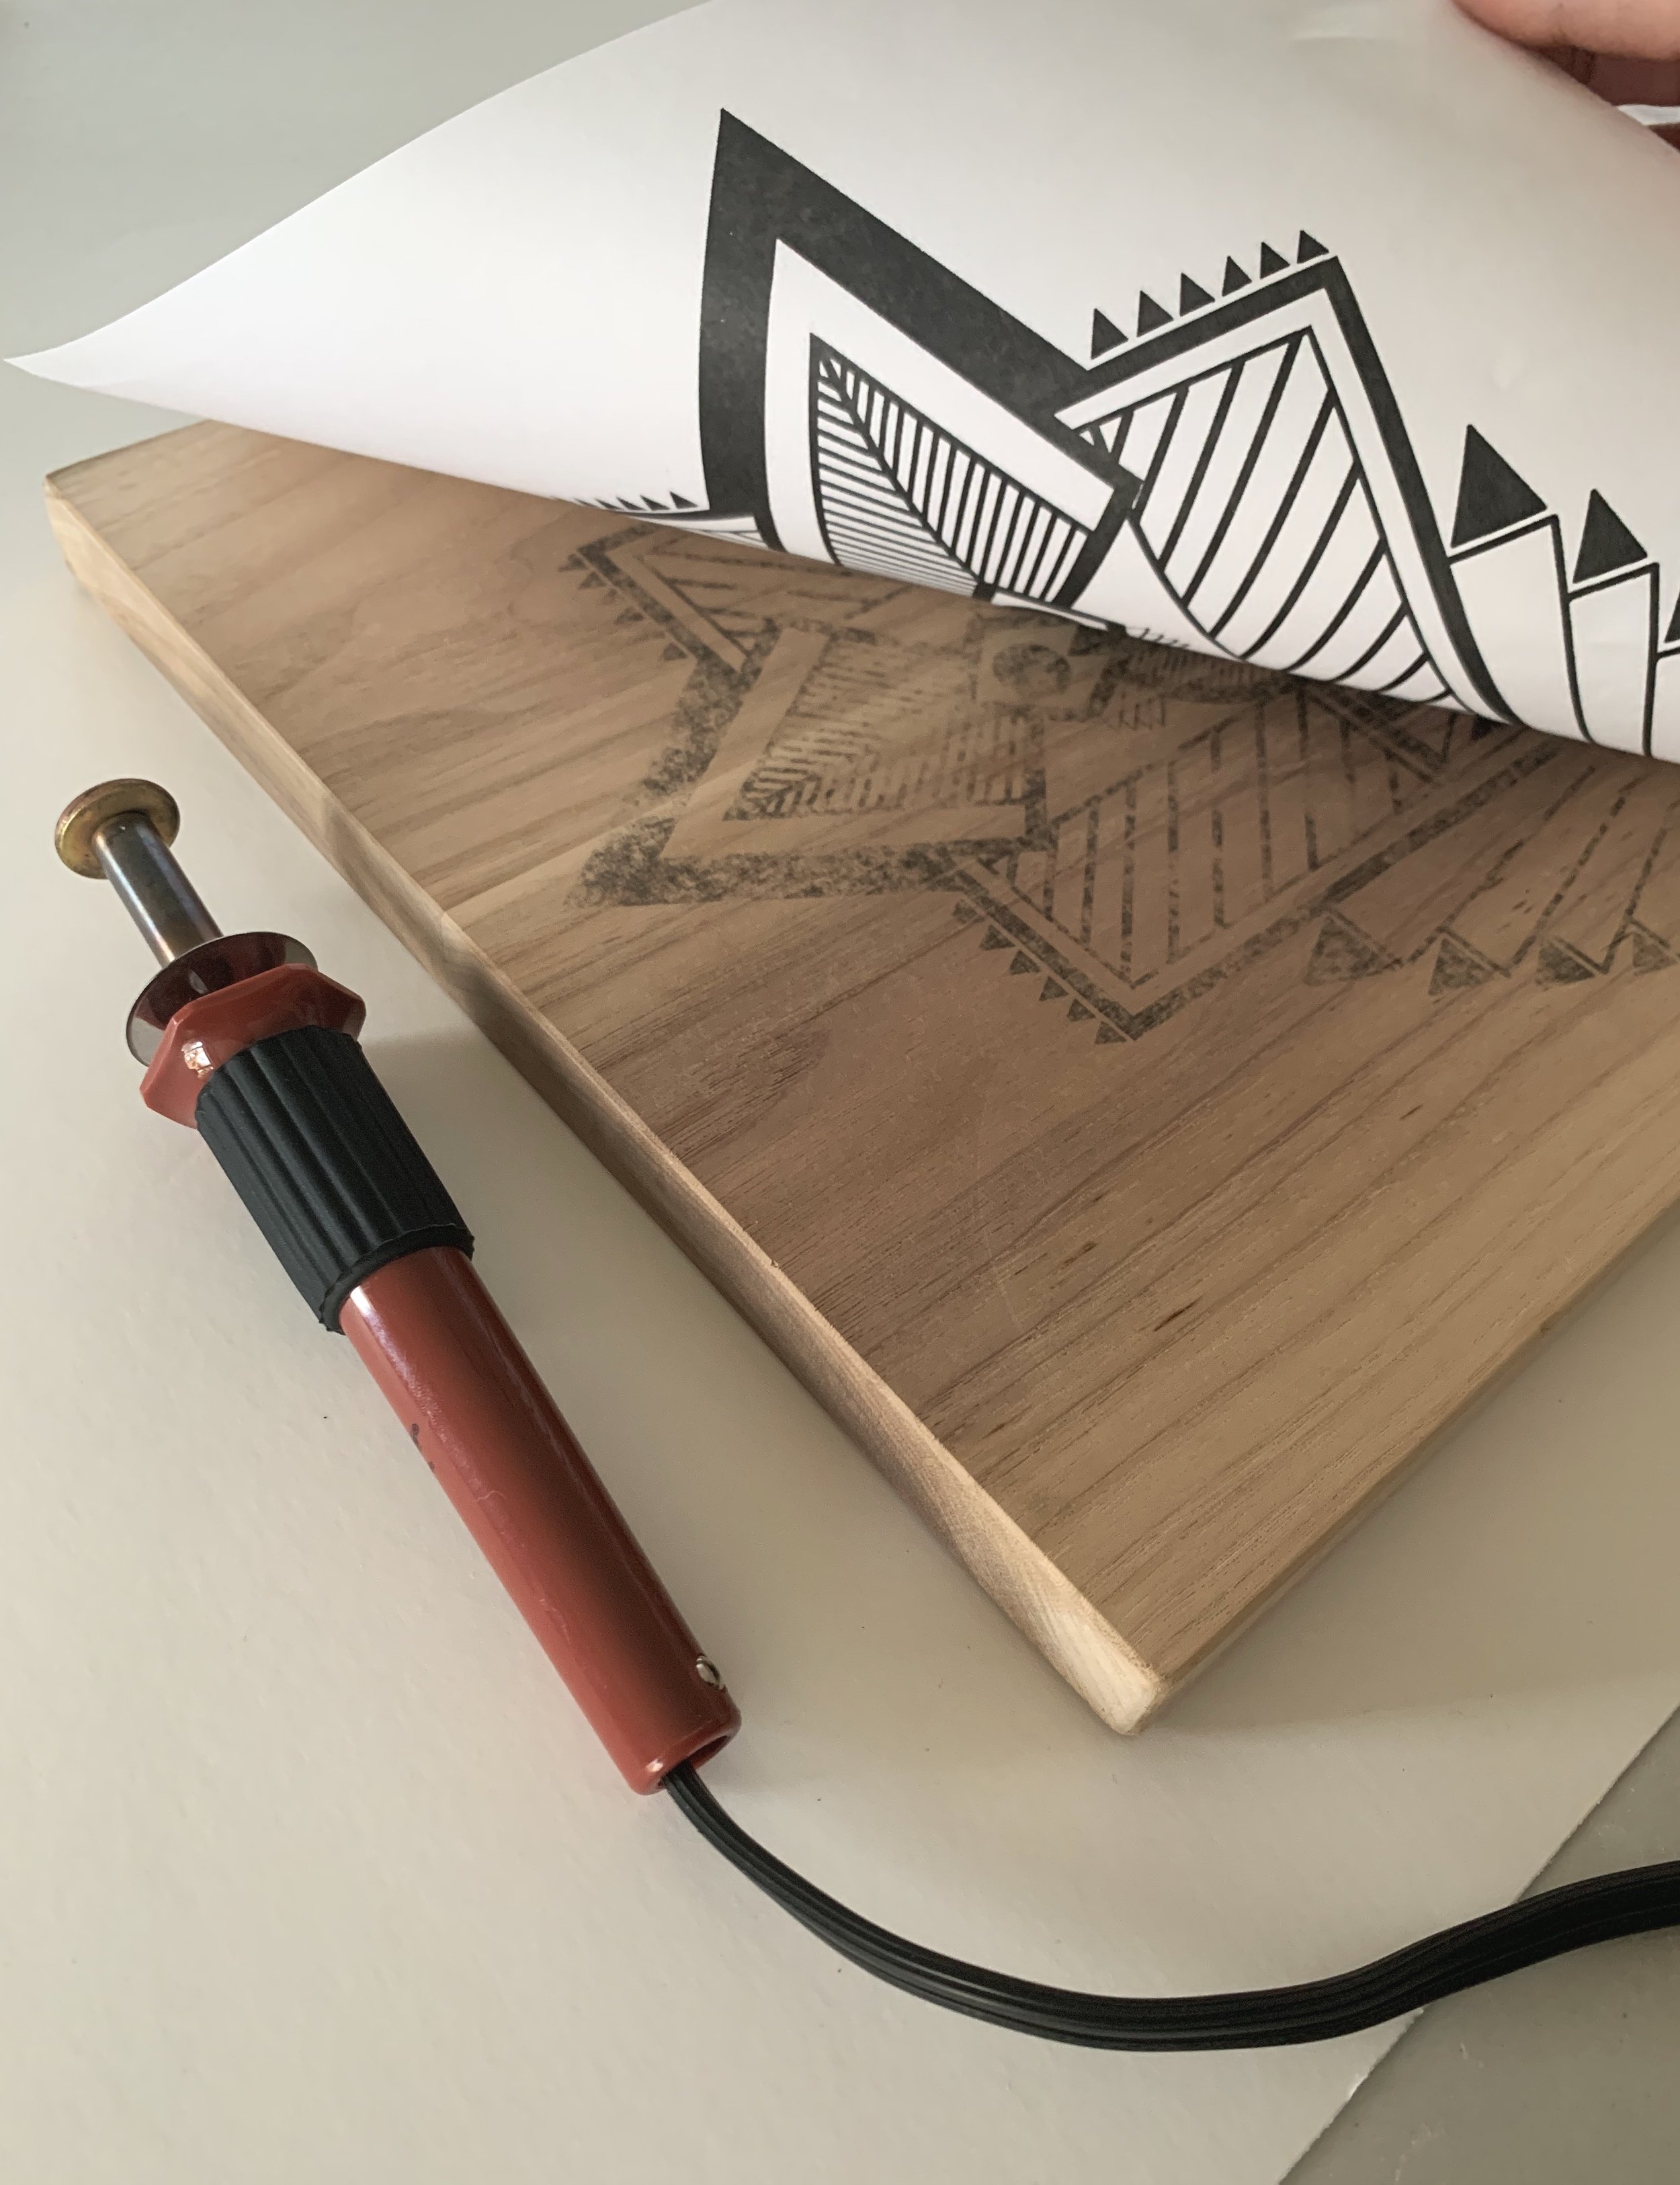 Chuyển thiết kế của bạn lên gỗ